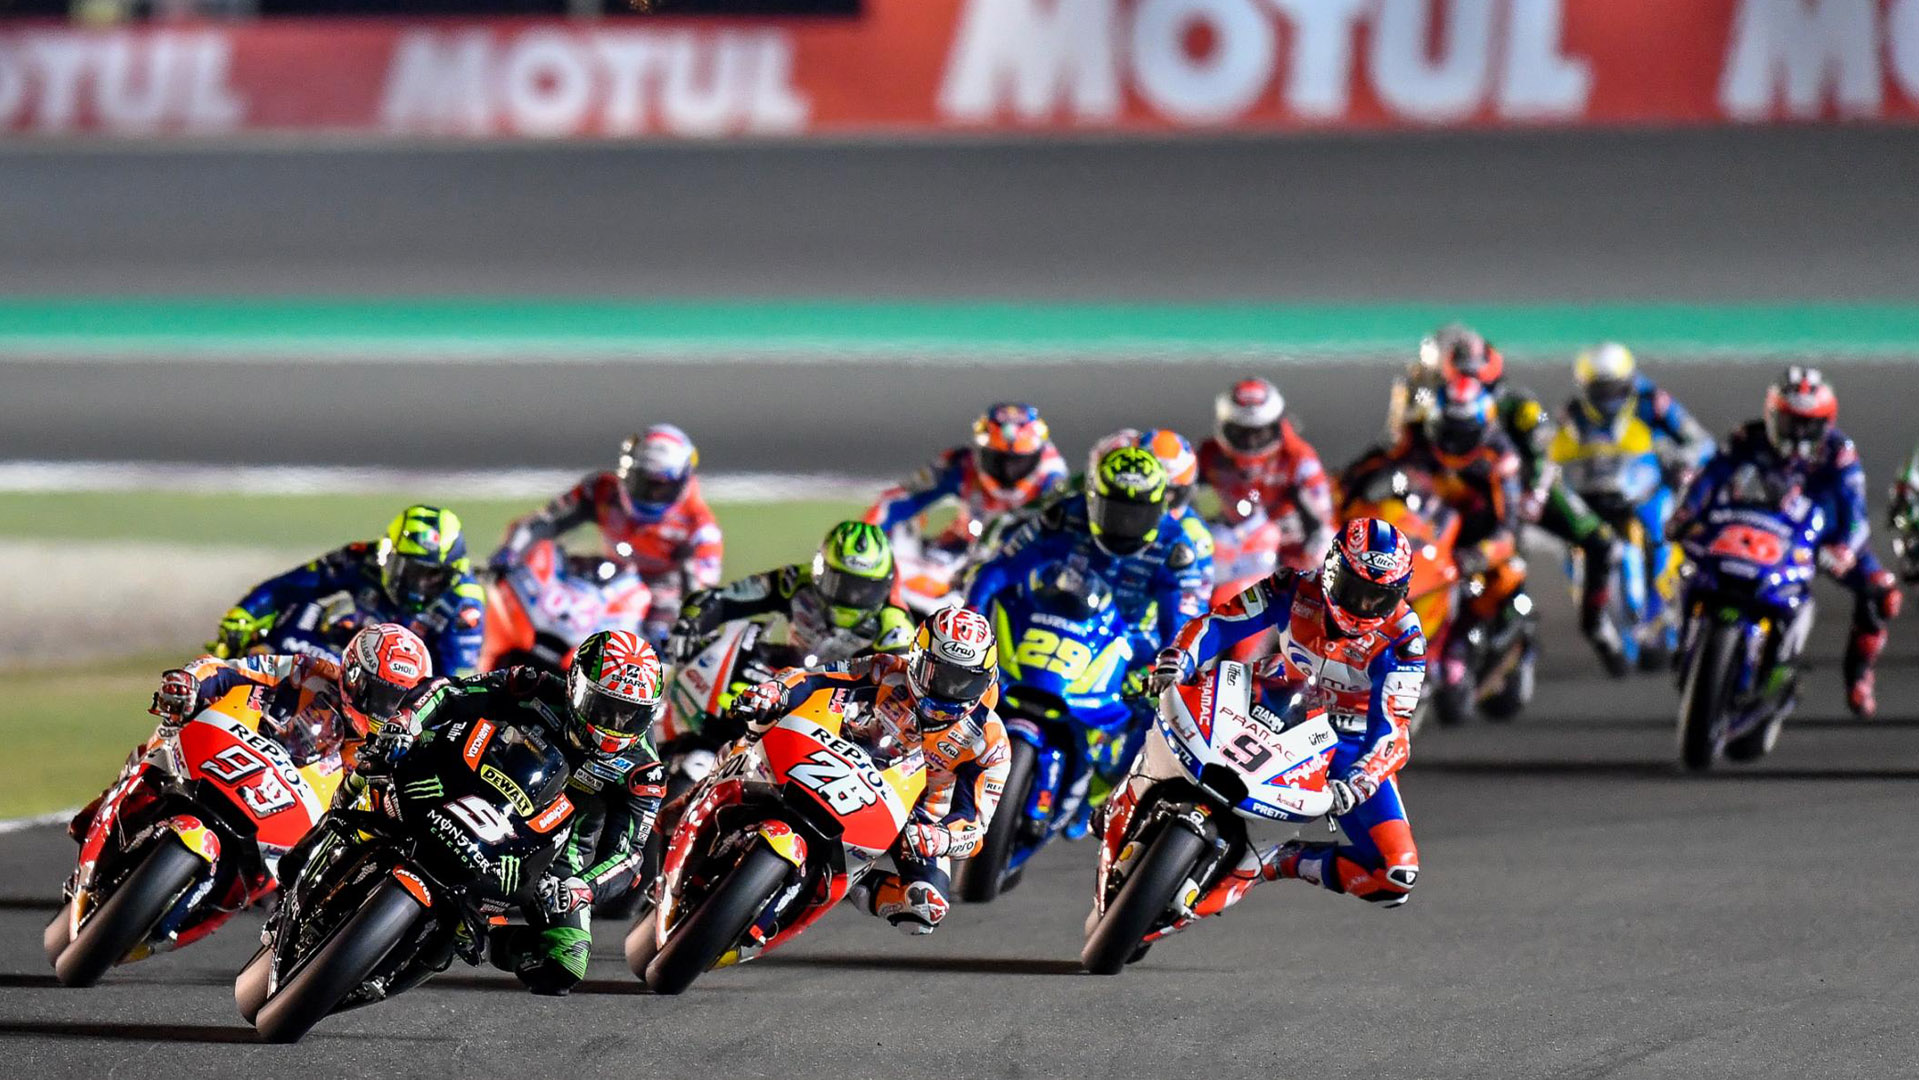 Chặng đua MotoGP 2020 đầu tiên tại Qatar bị hủy vì dịch Covid-19